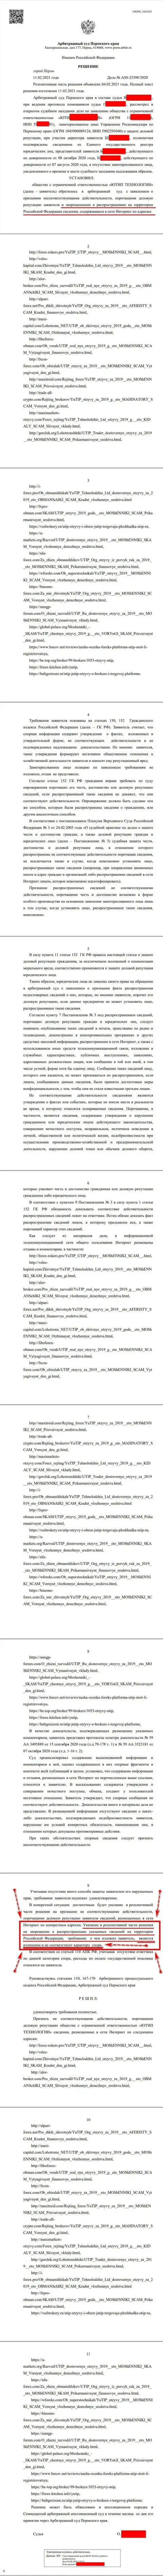 Решение Арбитражного суда города Перми по судебному иску мошенников UTIP Org в отношении онлайн-ресурса Forex-Brokers.Pro